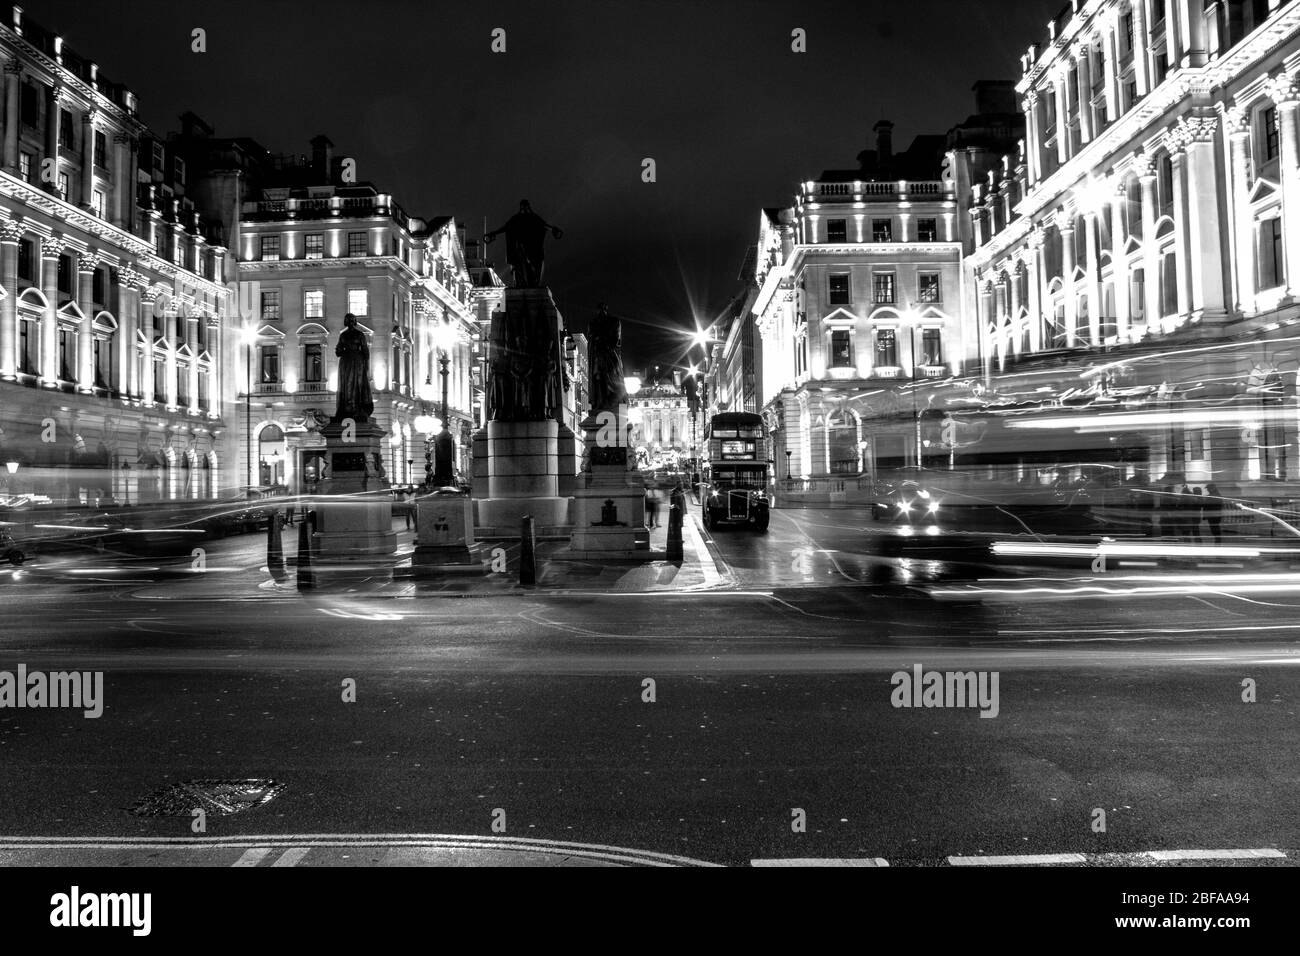 Ma vue de Londres en noir et blanc avec mon appareil photo. Banque D'Images